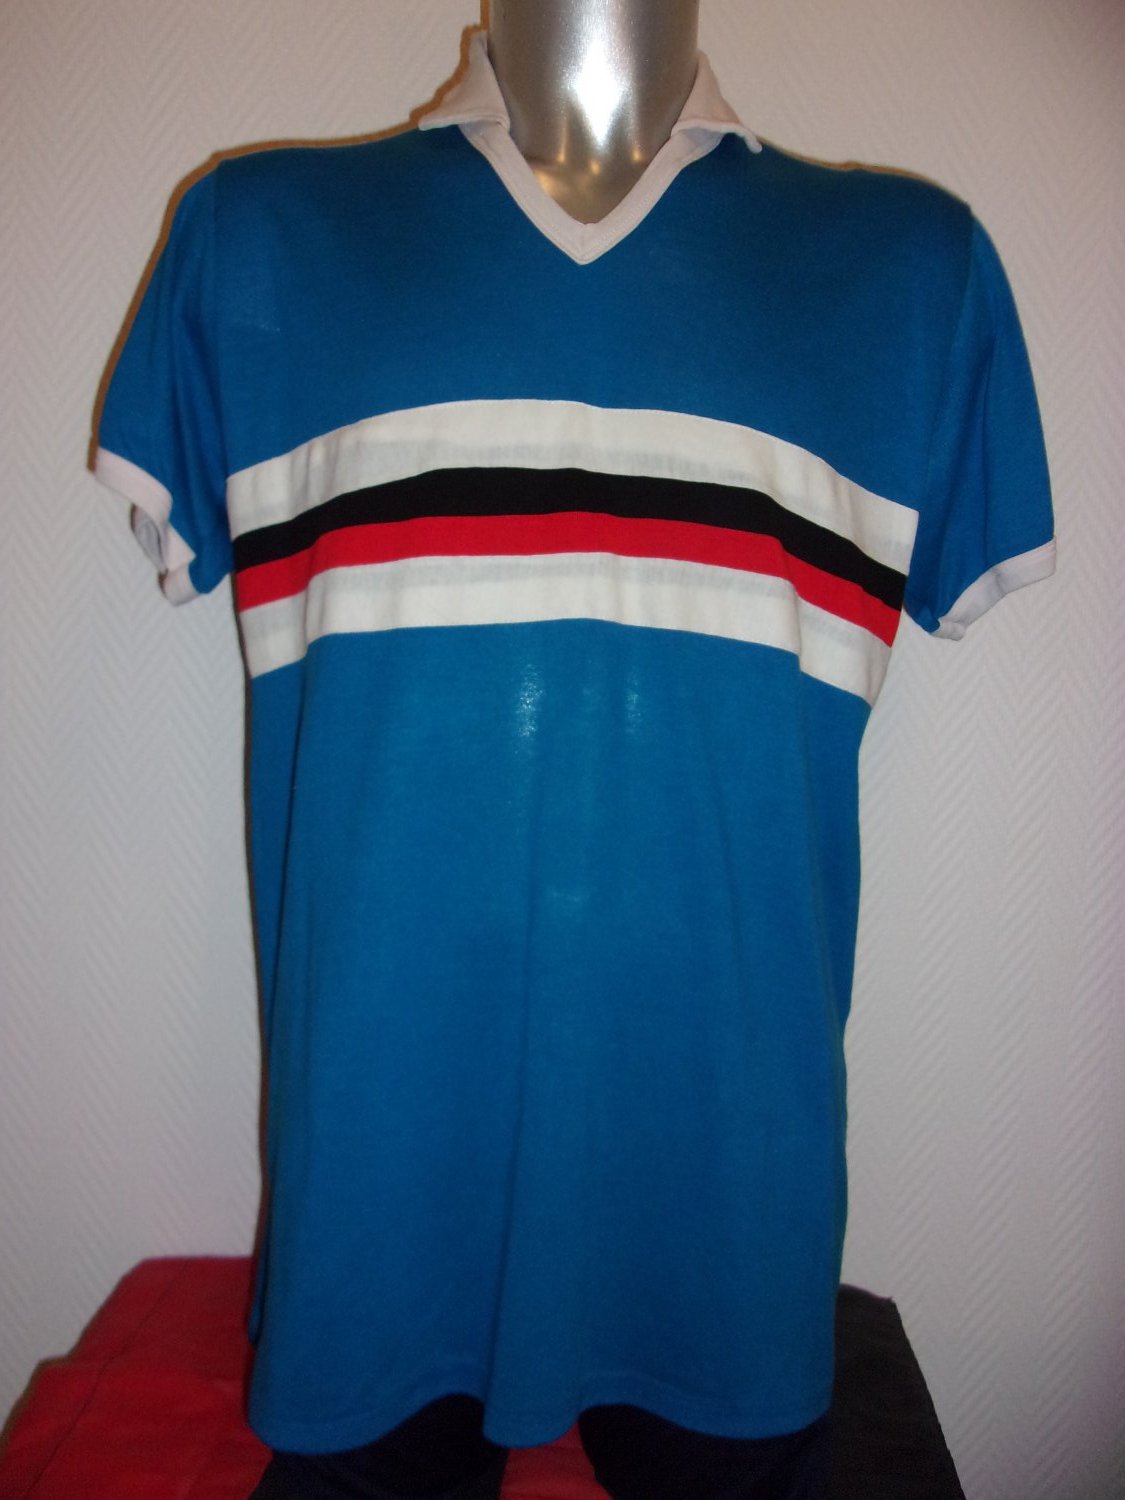 maillot de foot ogc nice réplique 1971-1972 rétro